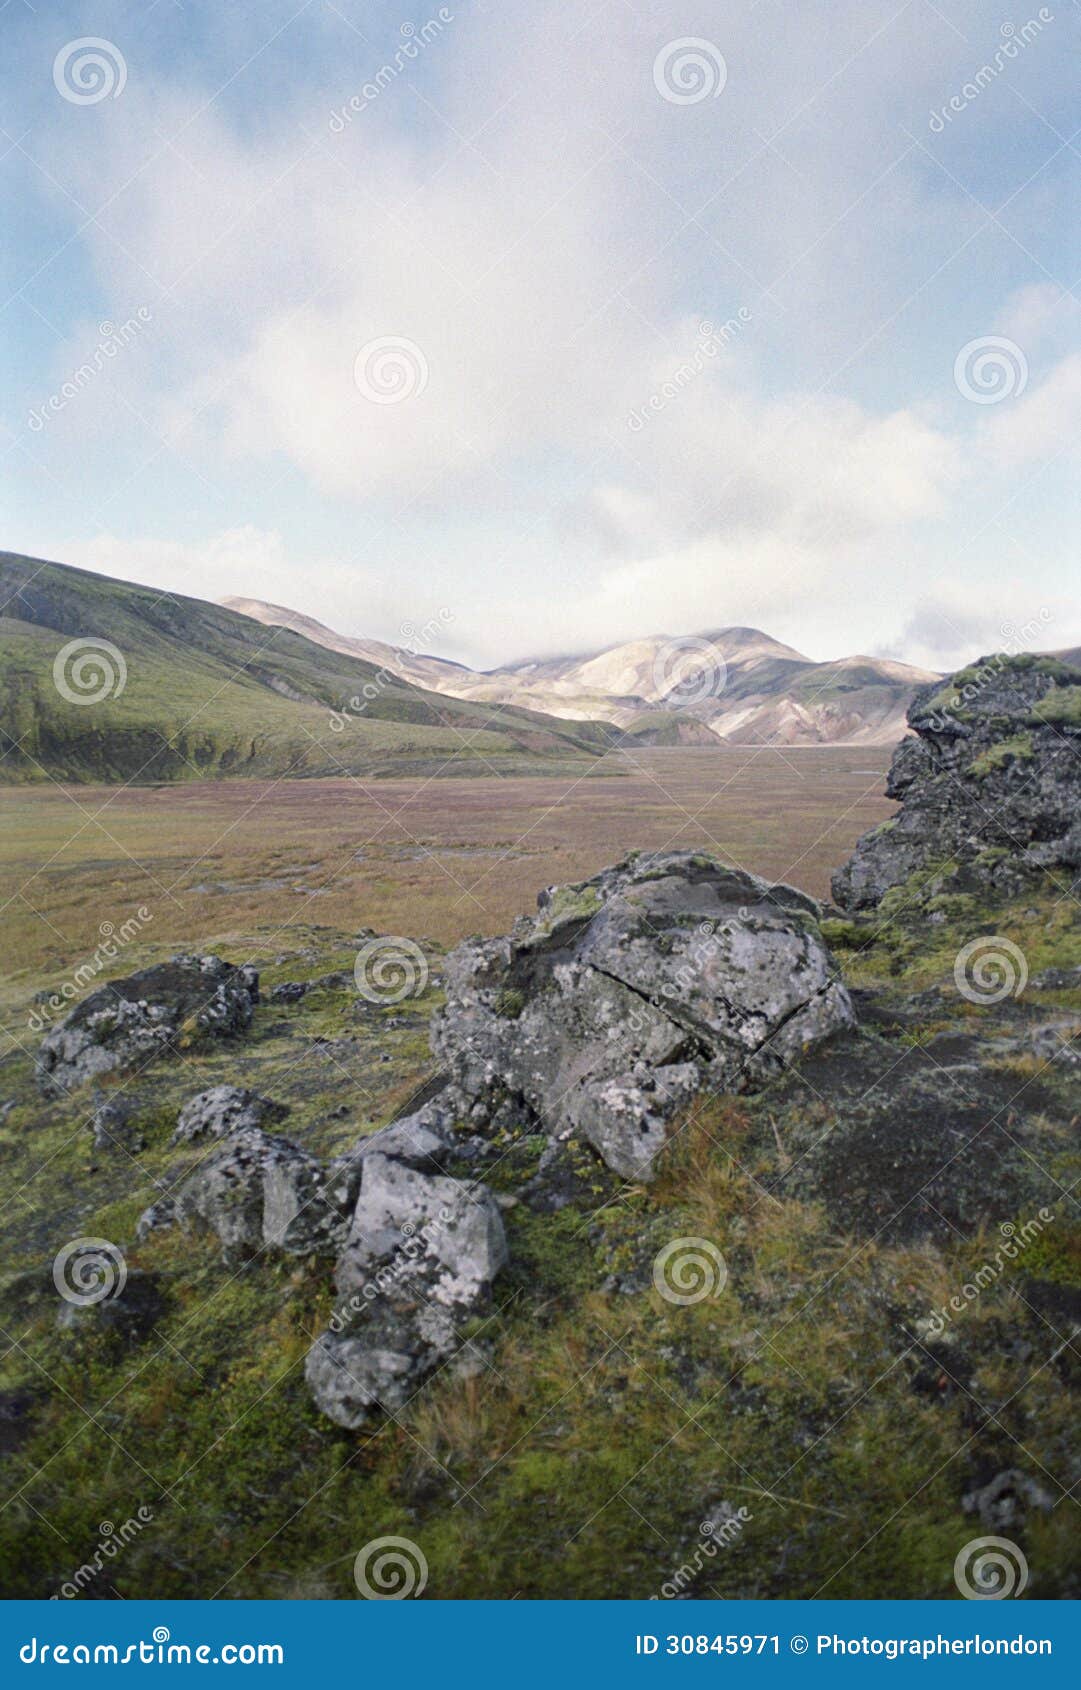 rocky mountainous landscape